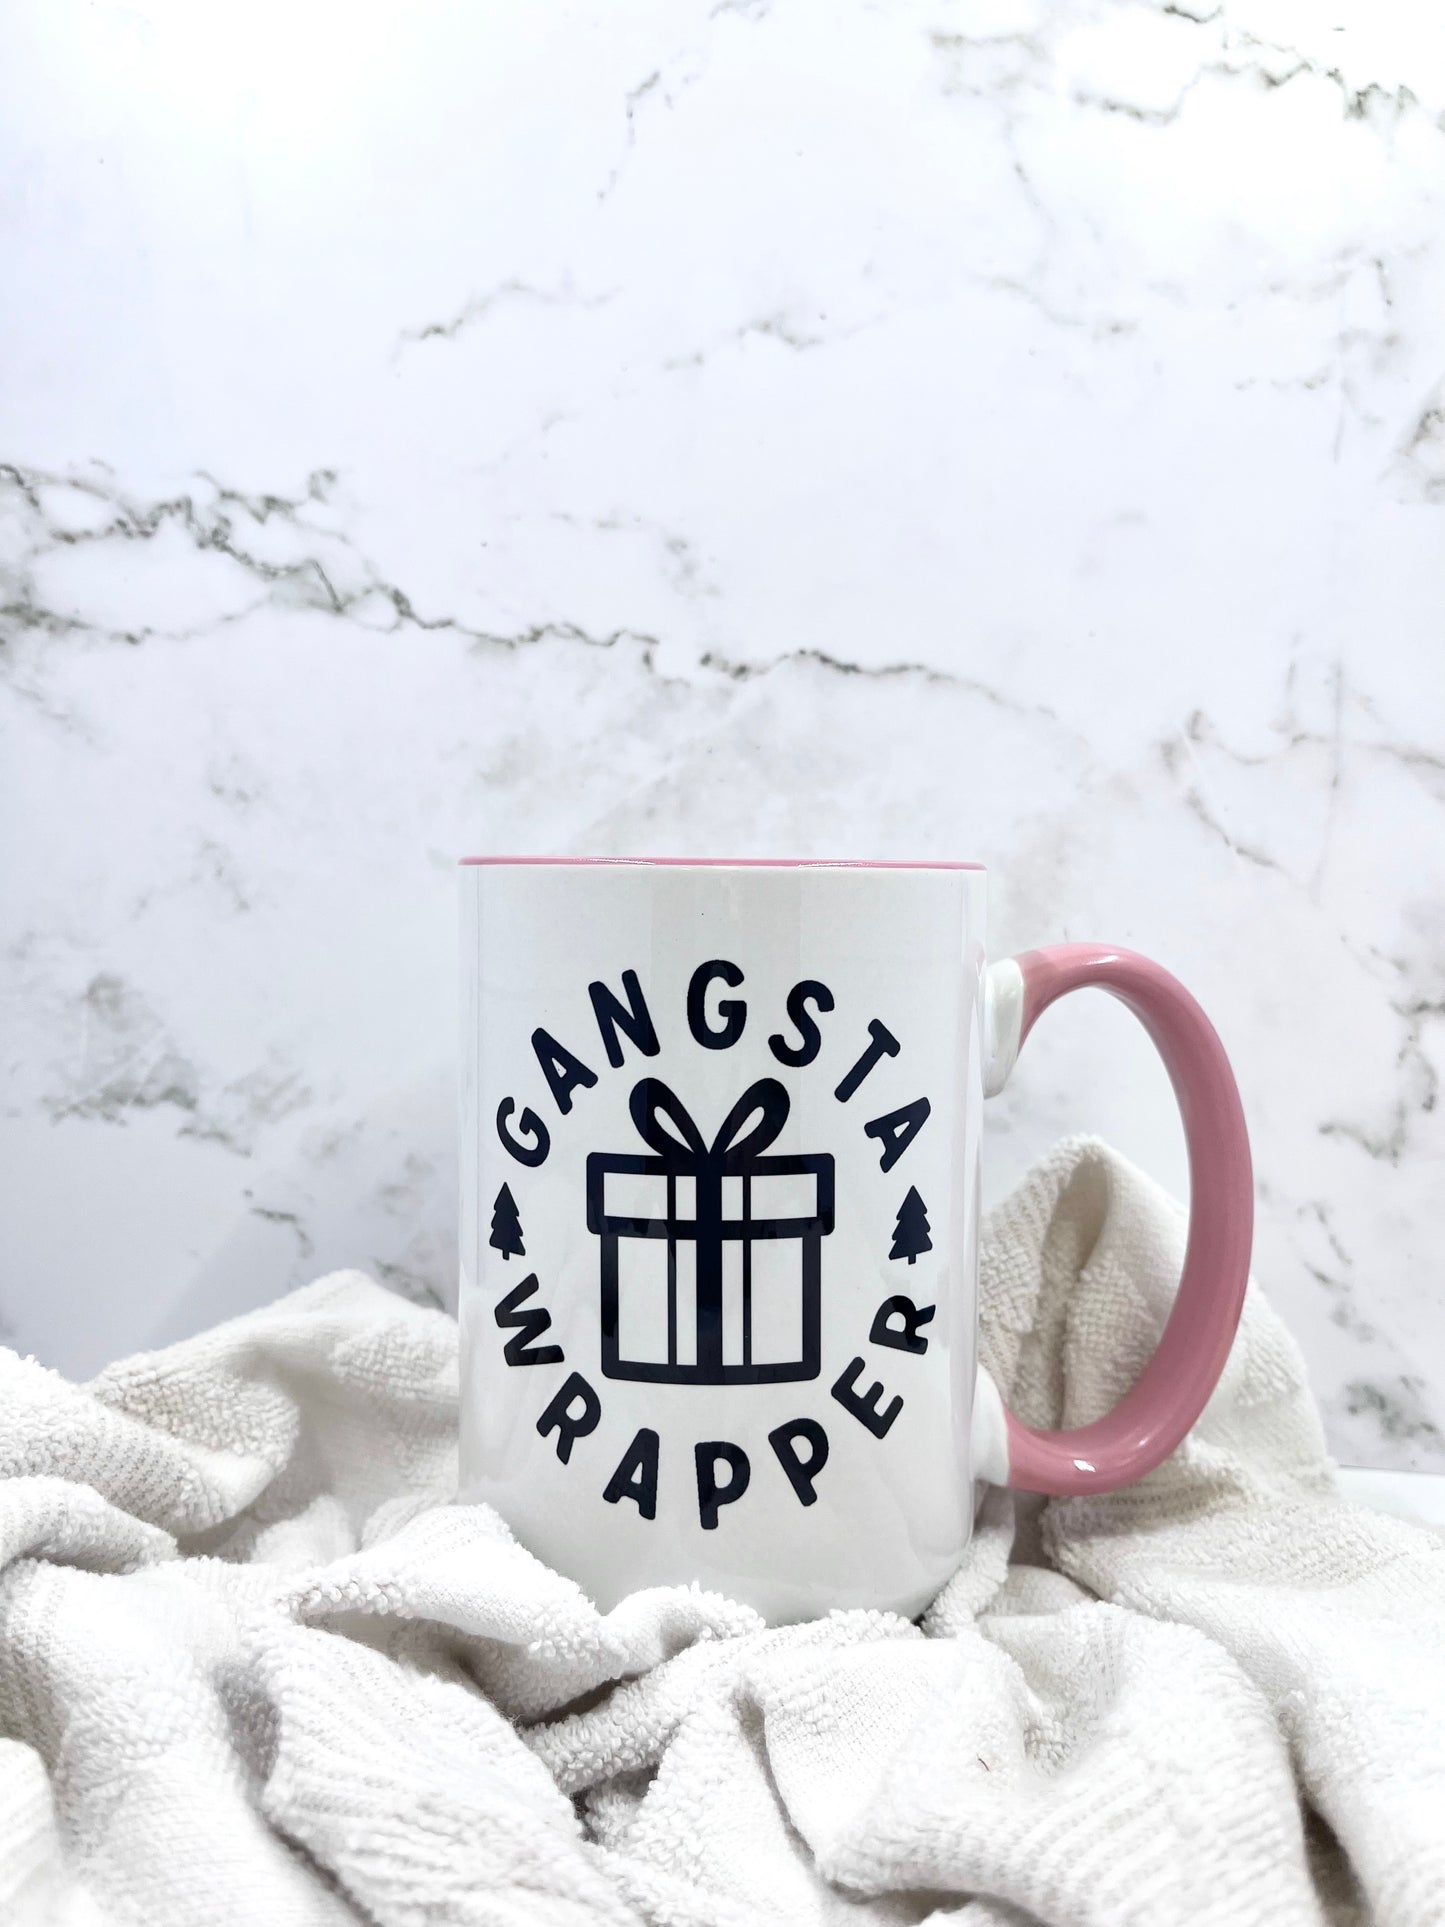 Gangsta Wrapper Mug